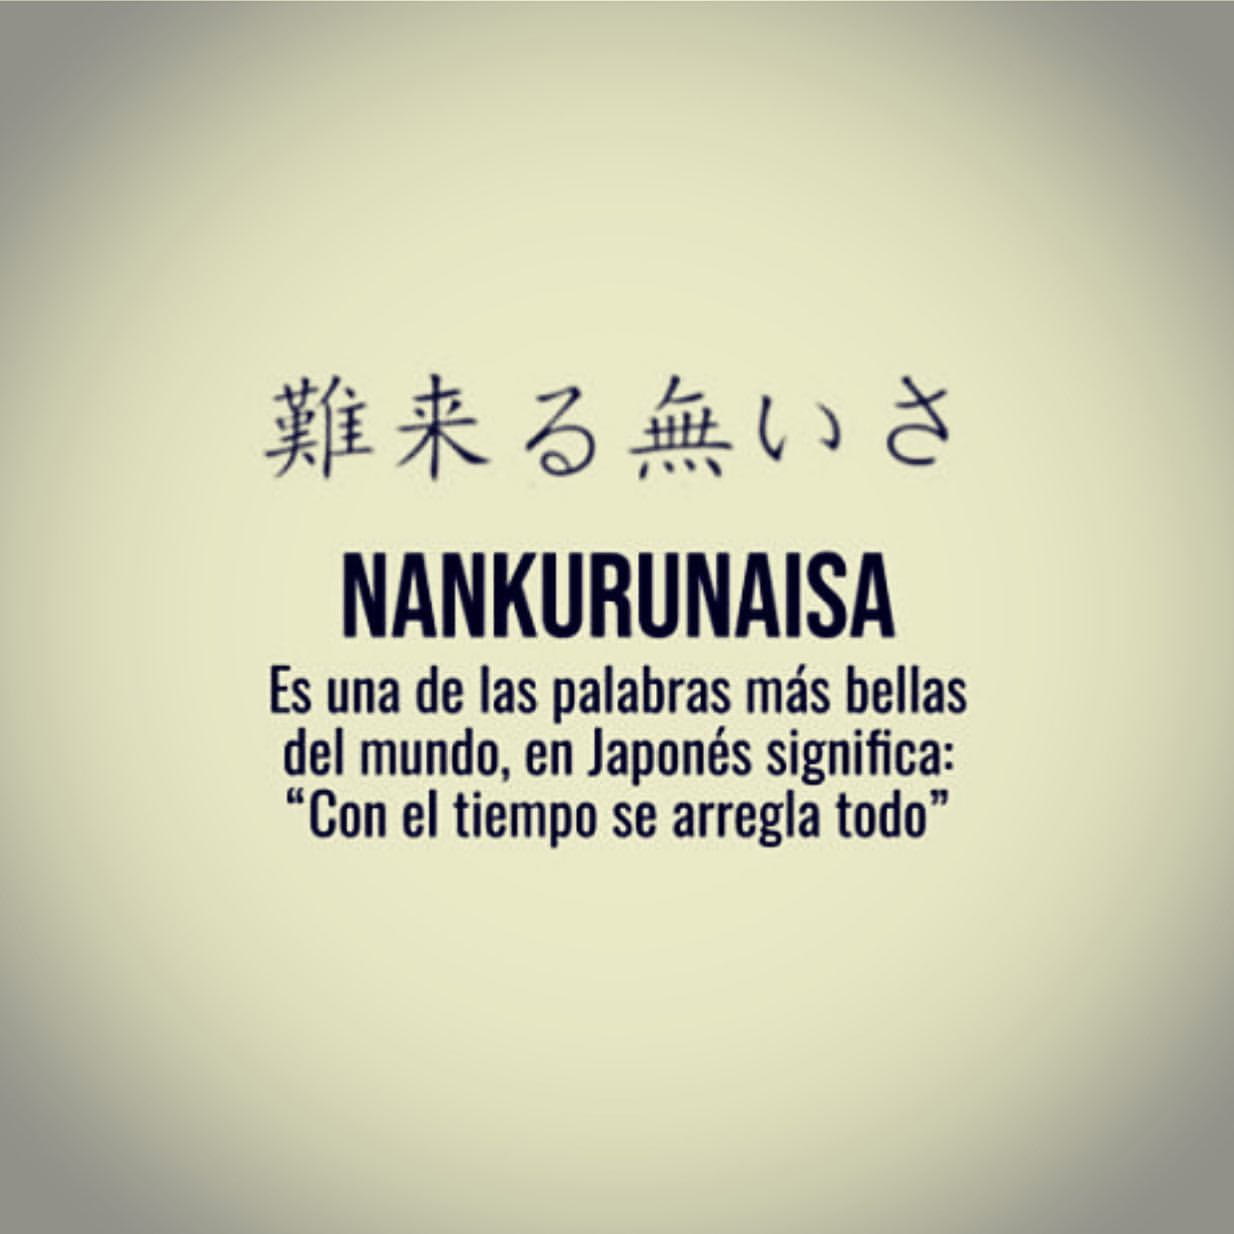 Nankurunaisa. Es una de las palabras más bellas del mundo, en japonés significa: "Con el tiempo se arregla todo".